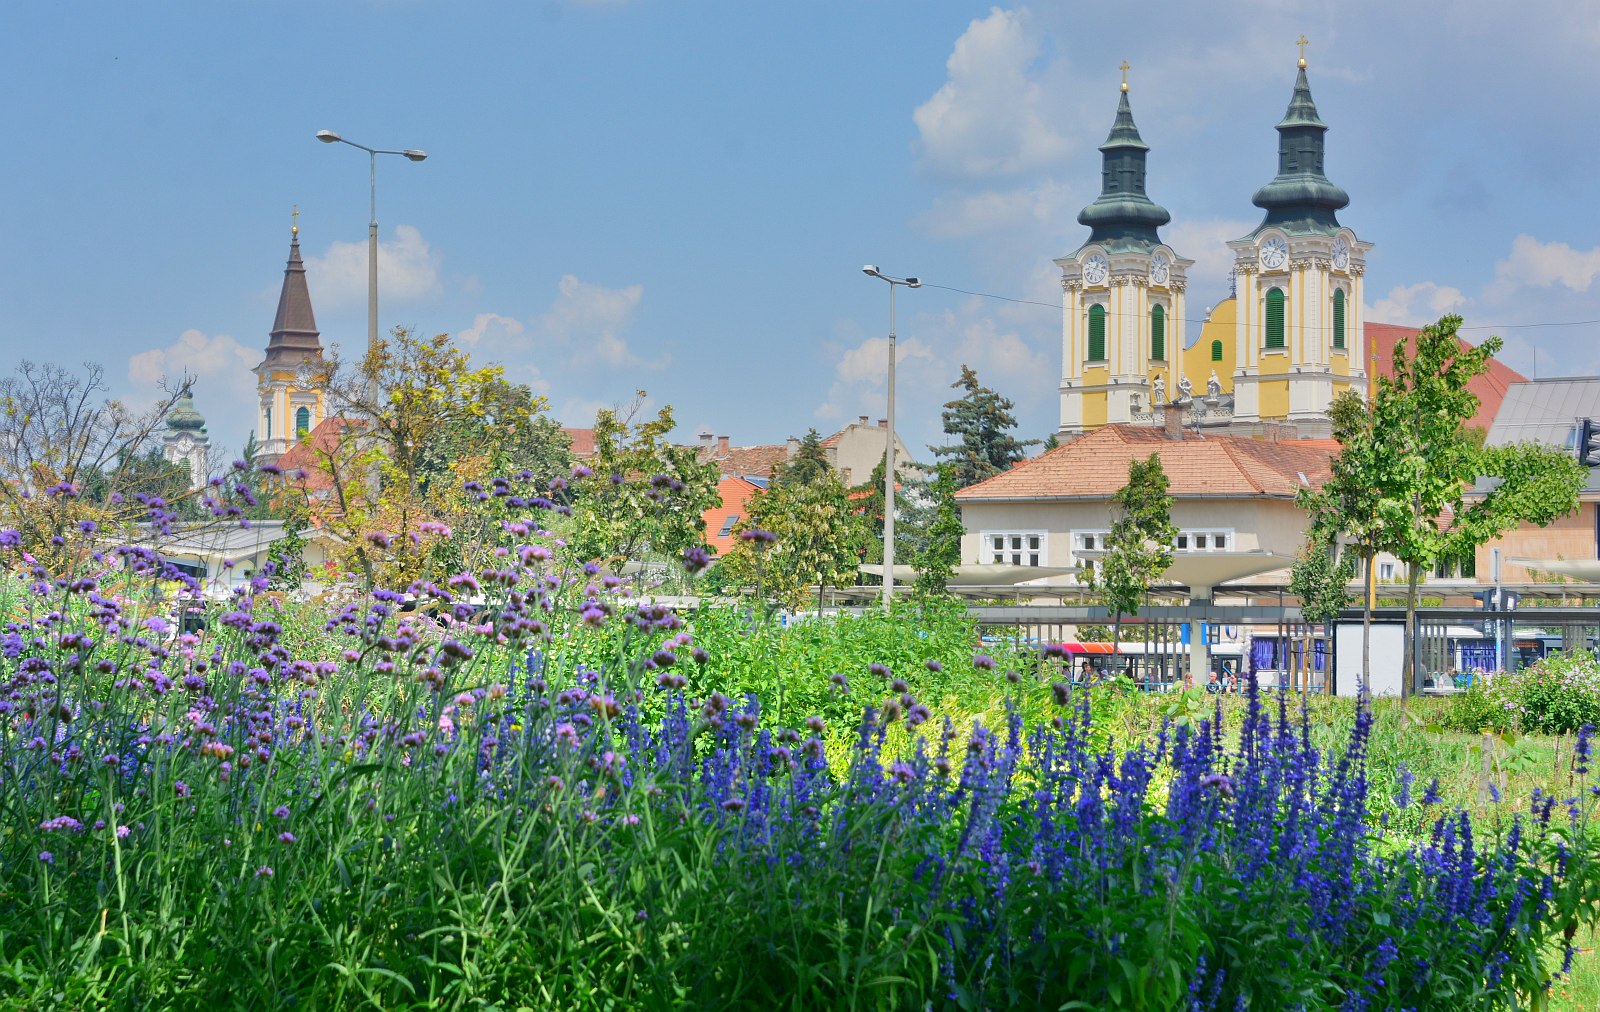 Közös felkészülés - Székesfehérvár és Orfű a jövő évi Entente Florale Europe versenyen